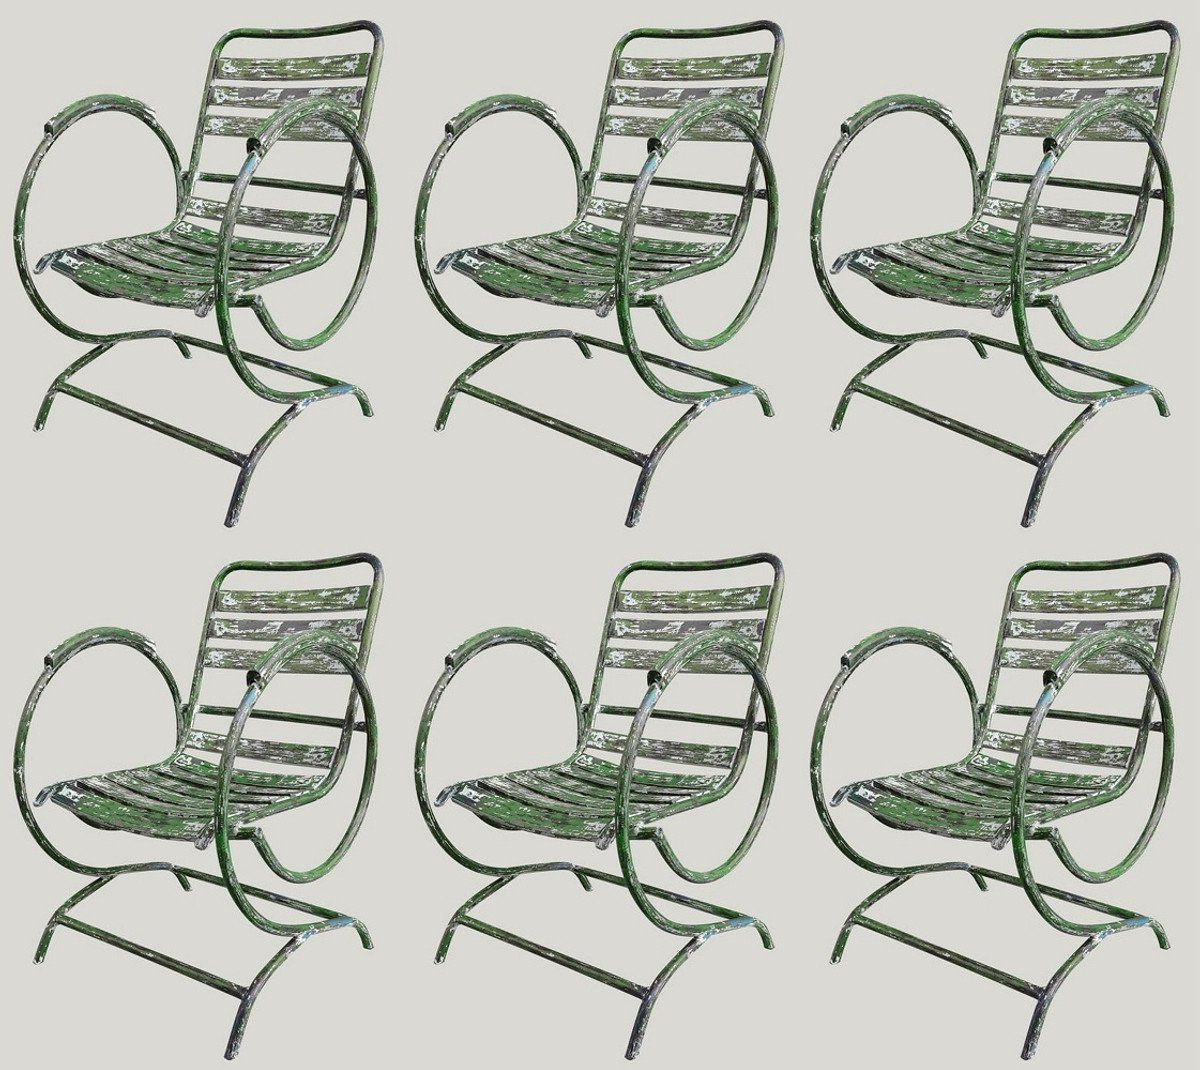 Casa Padrino Gartenstuhl Jugendstil Gartenstuhl Set Antik Grün 60 x 45 x H. 85 cm - Handgefertigte Schmiedeeisen Stühle mit Armlehnen - Nostalgische Garten Möbel